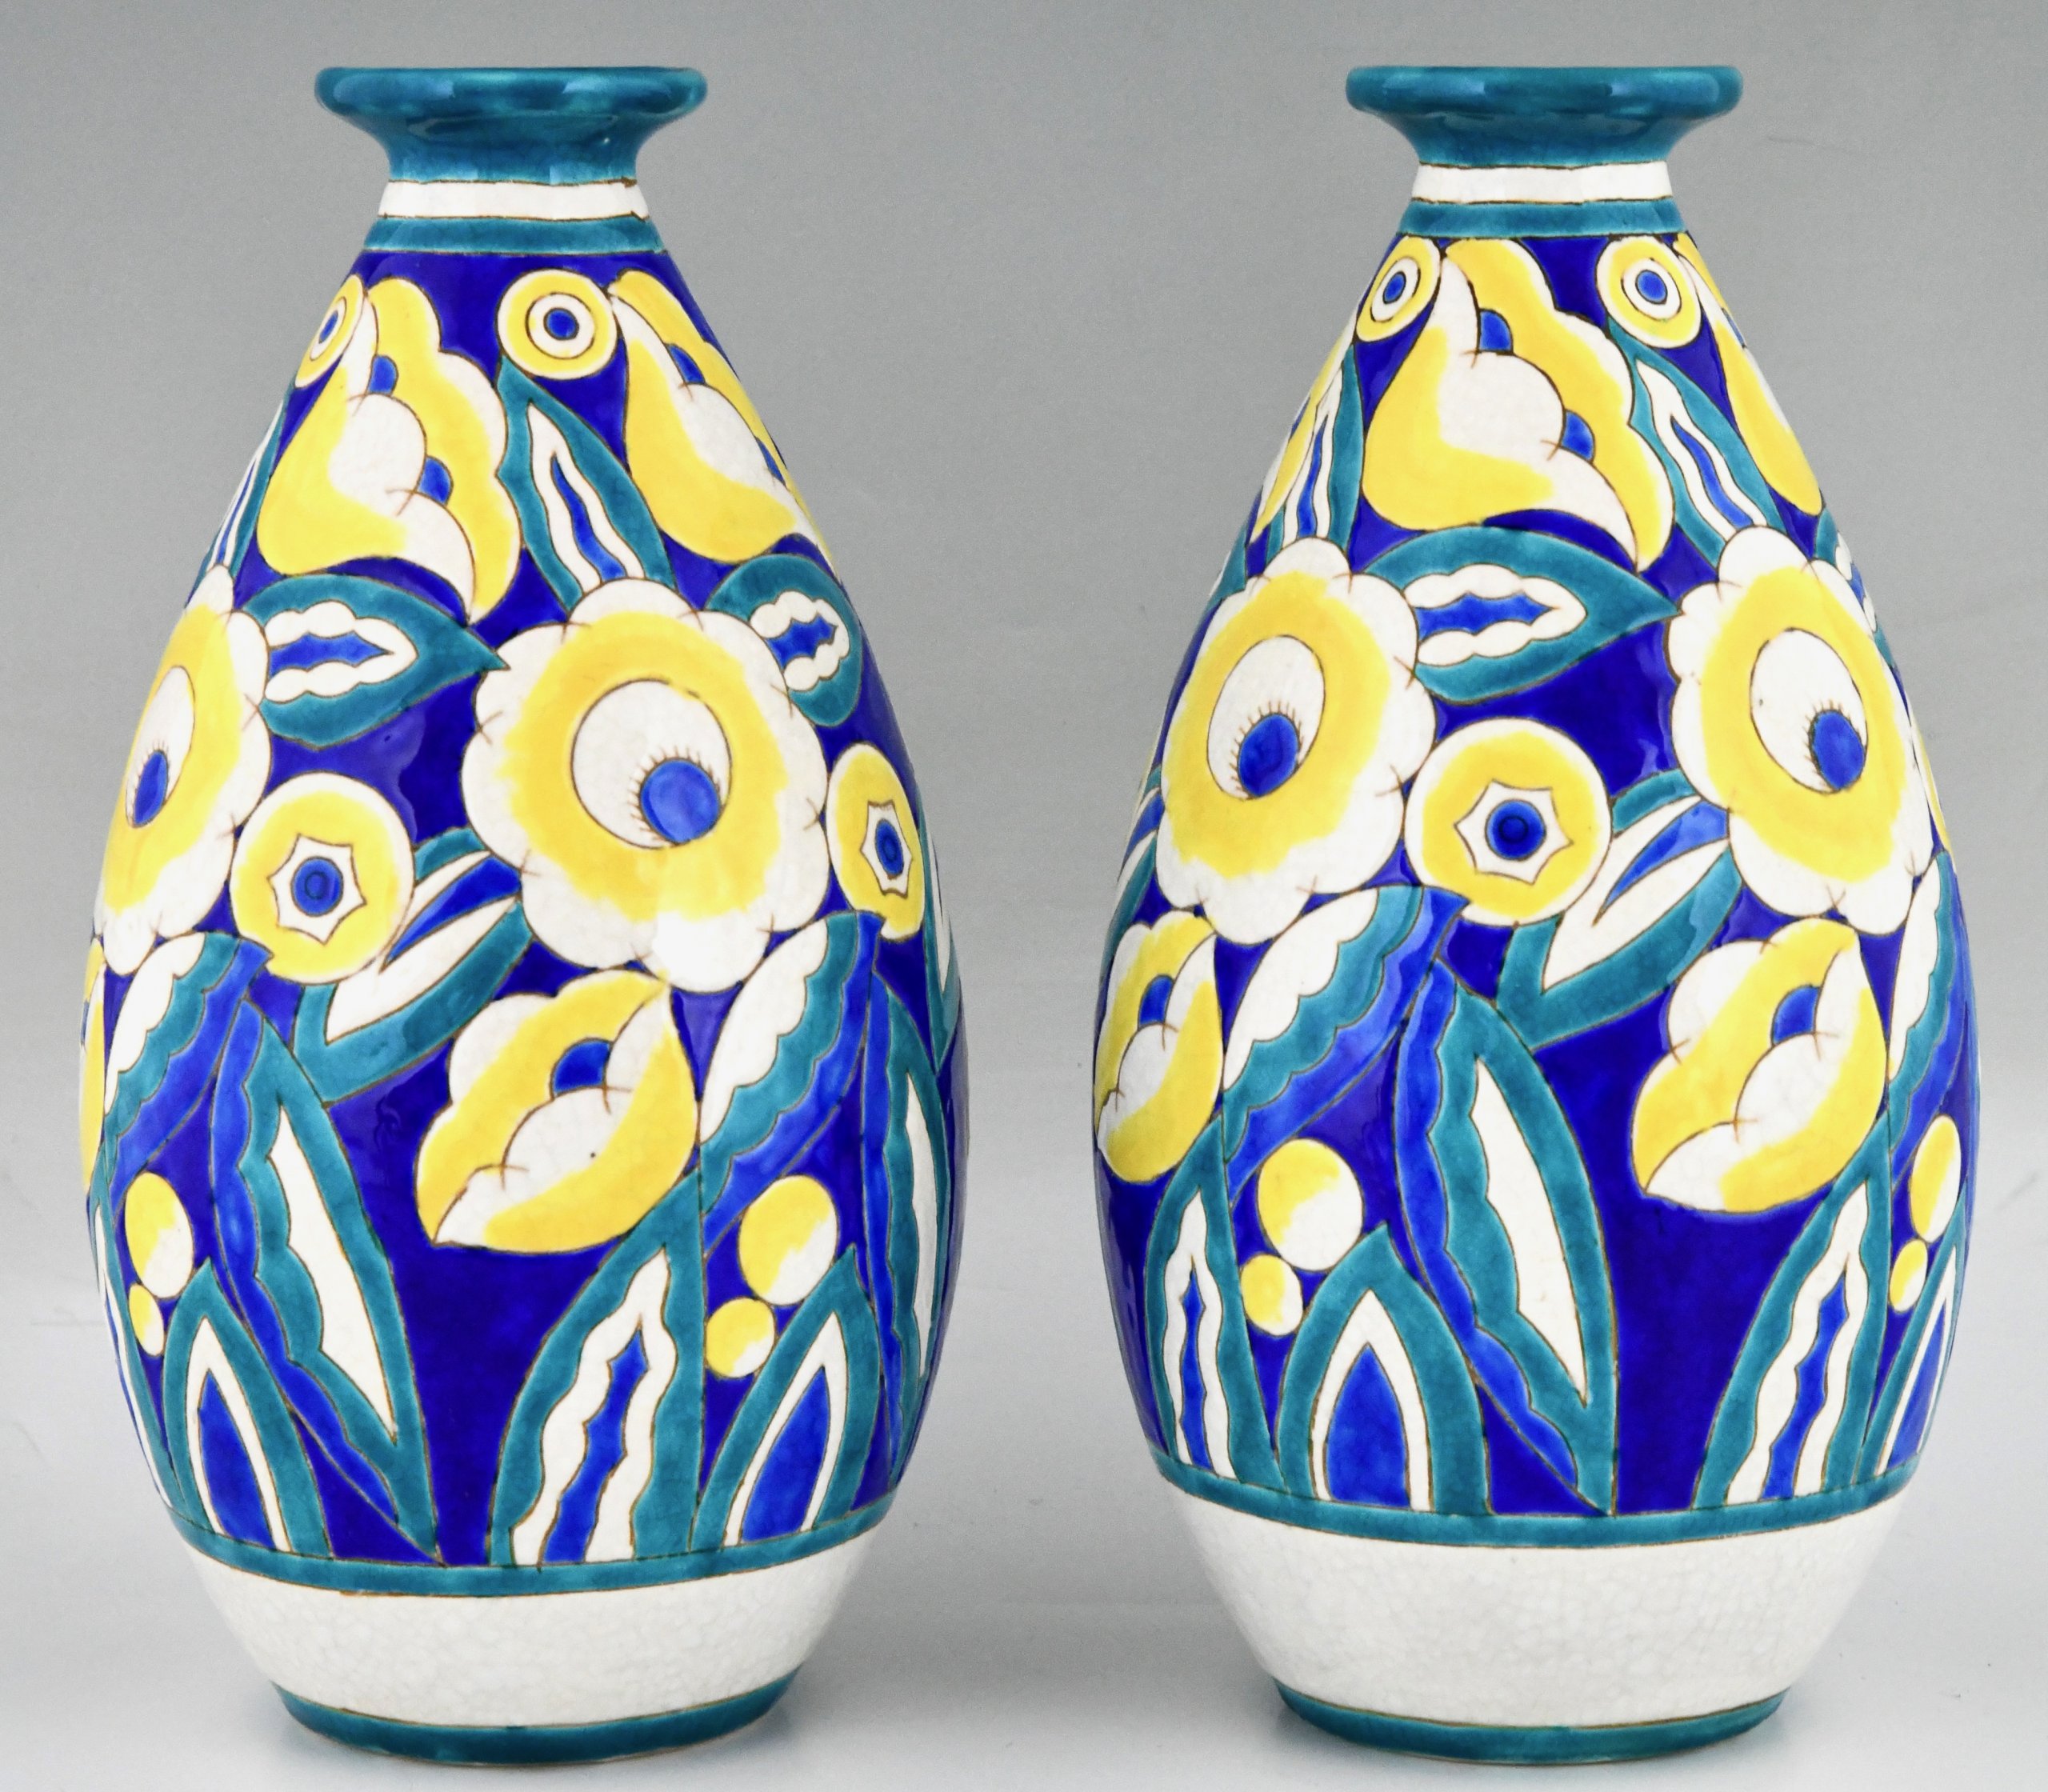 Pair of Art Deco ceramic vases with flowers.